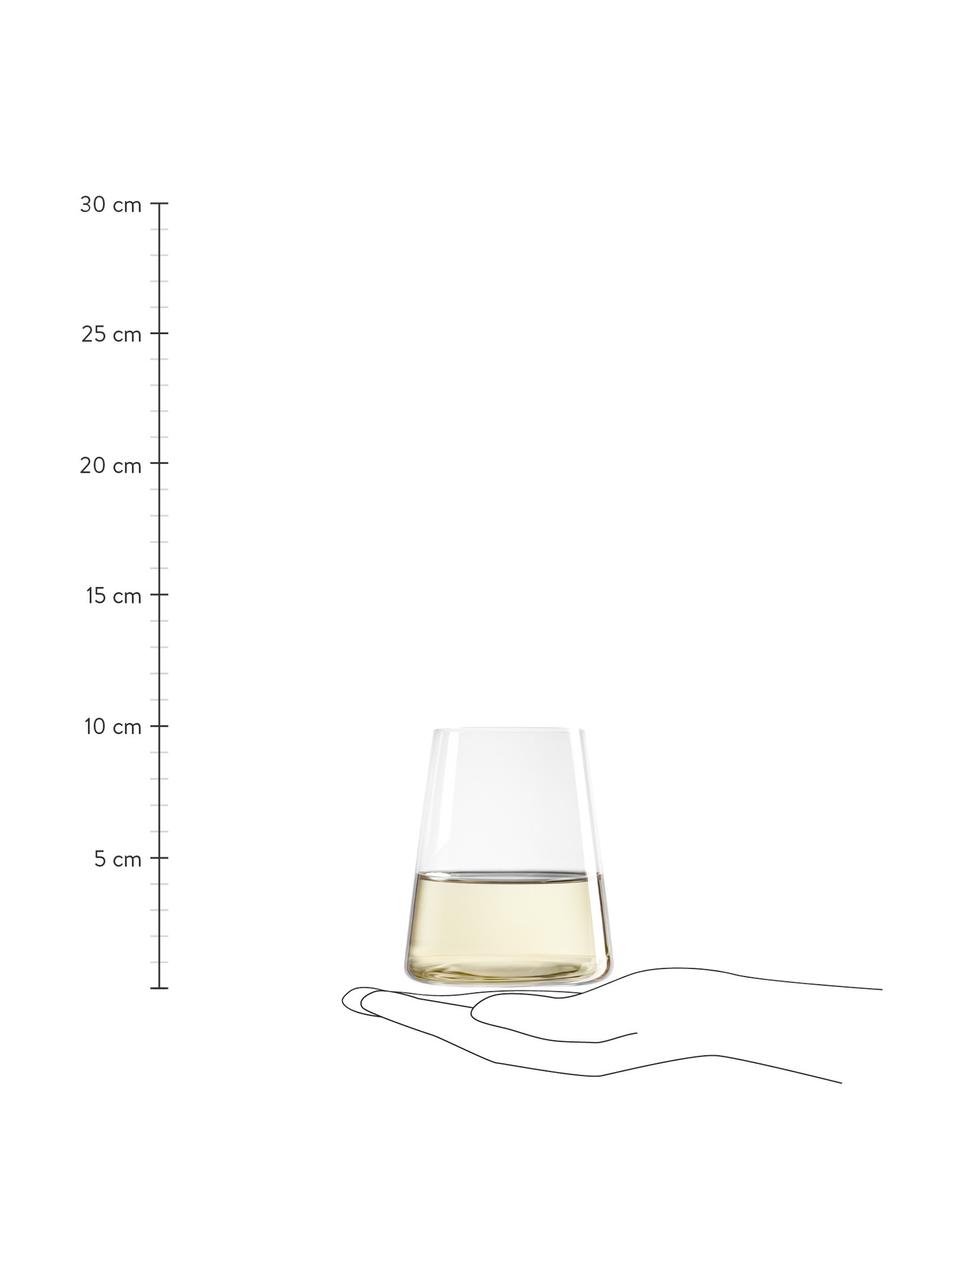 Bicchiere acqua in cristallo a forma di cono Power 6 pz, Cristallo, Trasparente, Ø 9 x Alt. 10 cm, 380 ml